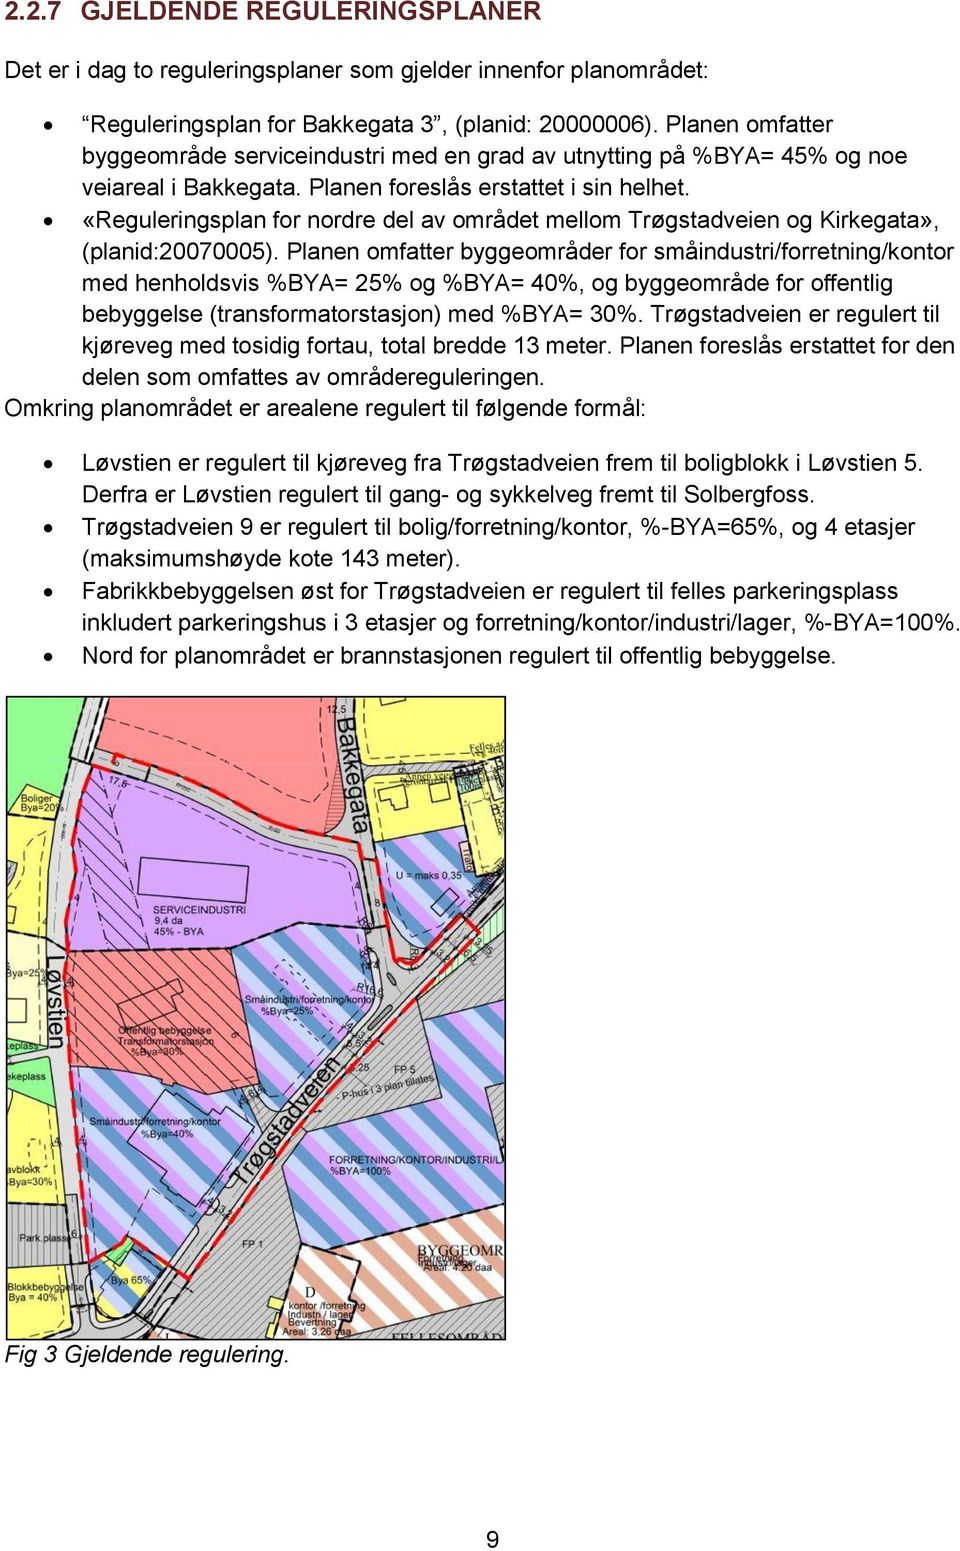 «Reguleringsplan for nordre del av området mellom Trøgstadveien og Kirkegata», (planid:20070005).